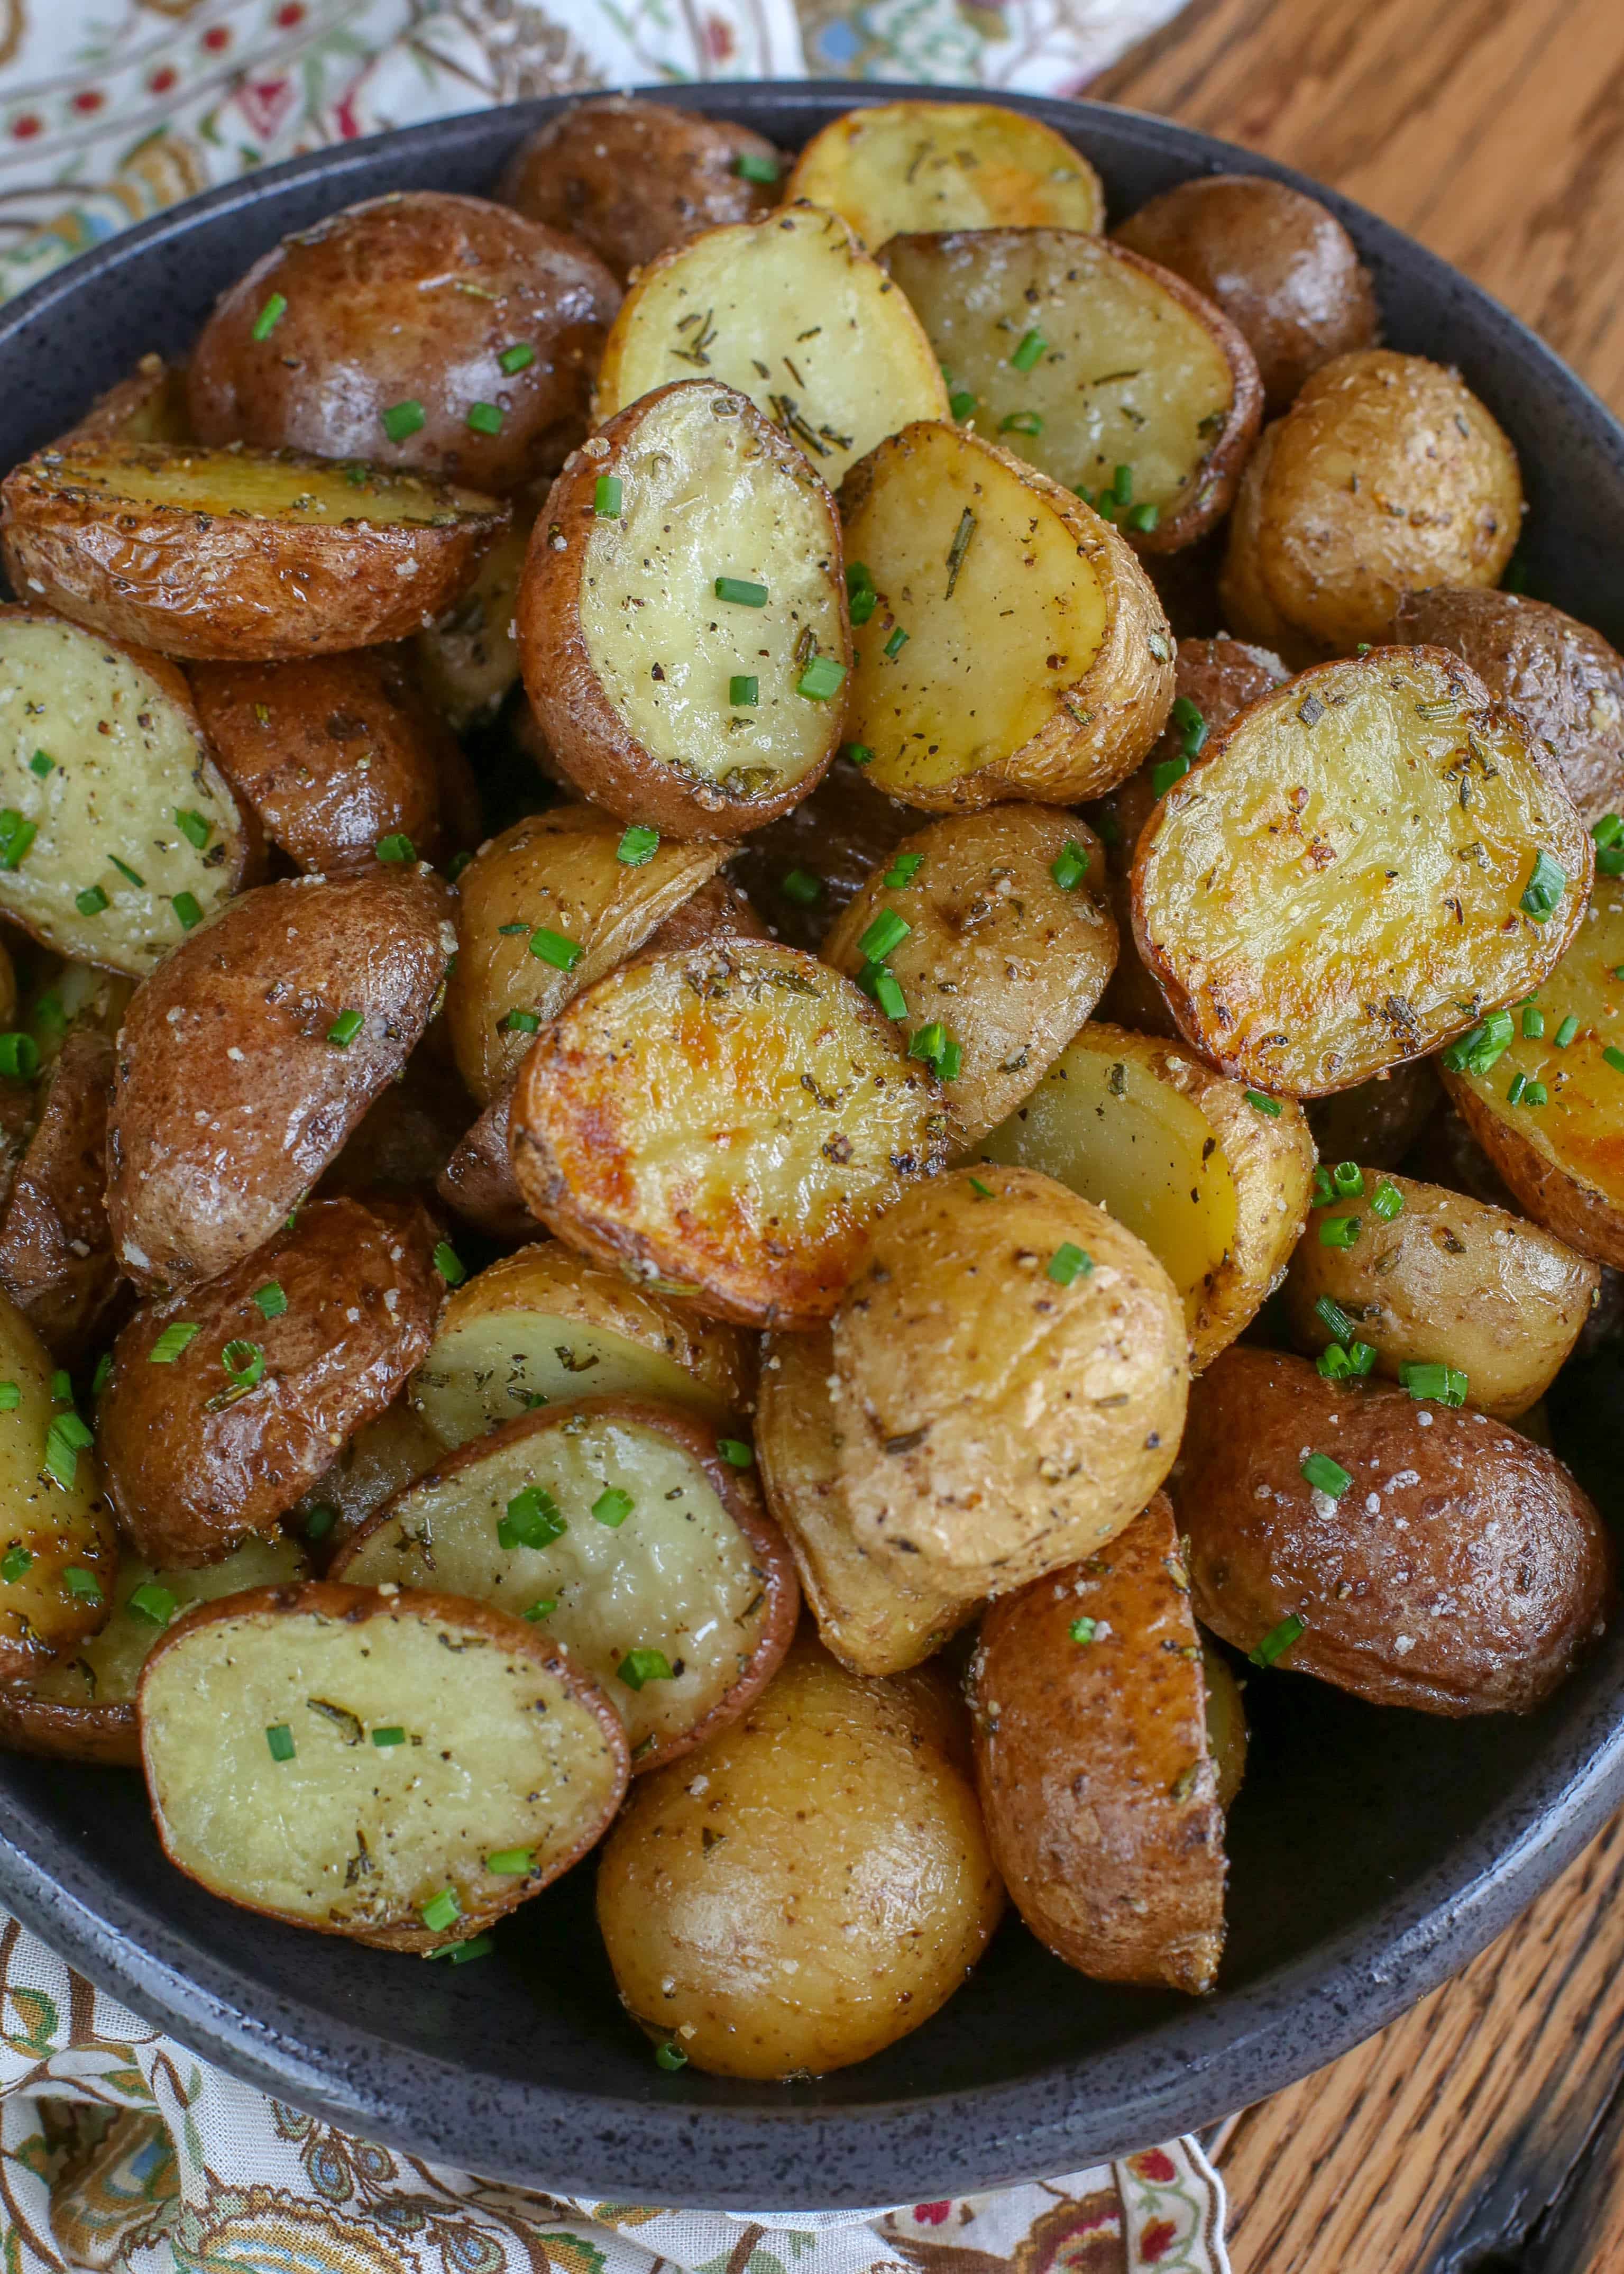 https://barefeetinthekitchen.com/wp-content/uploads/2013/10/Rosemary-Potatoes-1-1-of-1.jpg